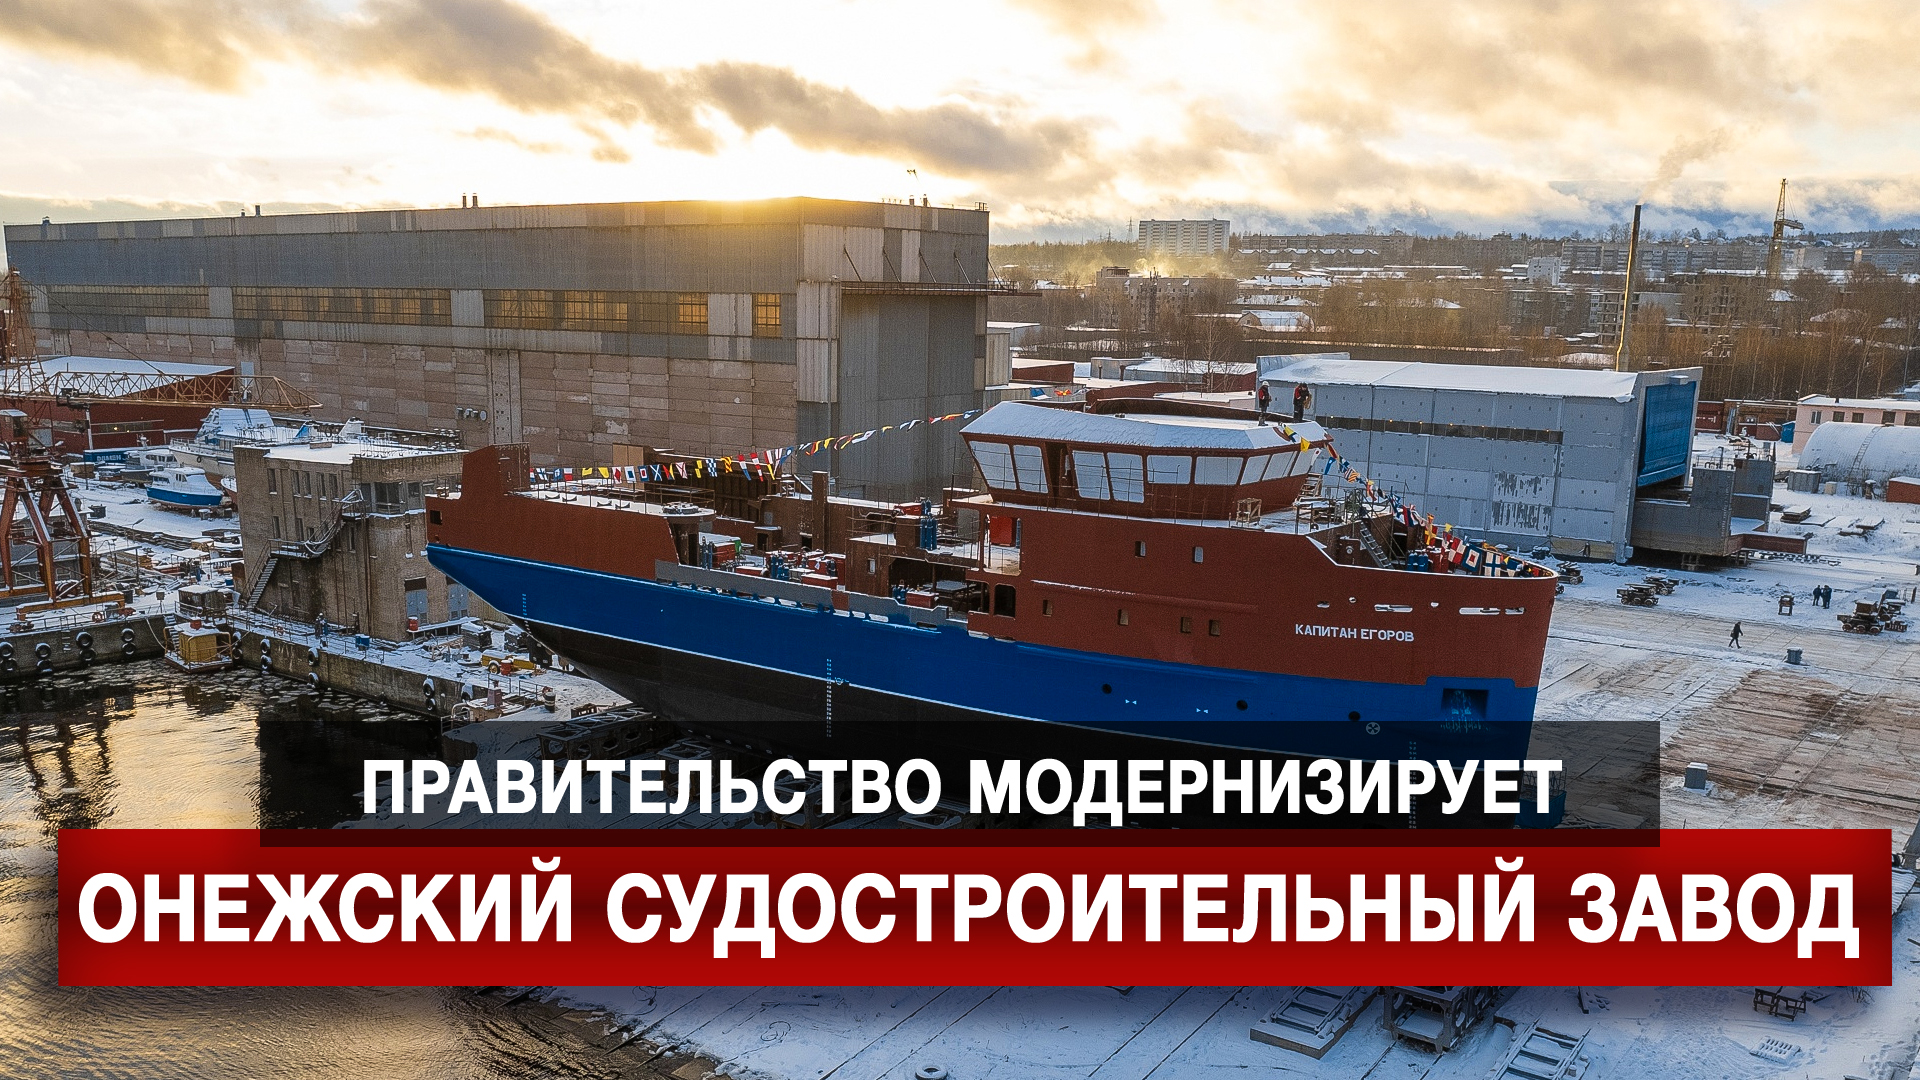 Правительство модернизирует Онежский судостроительный завод